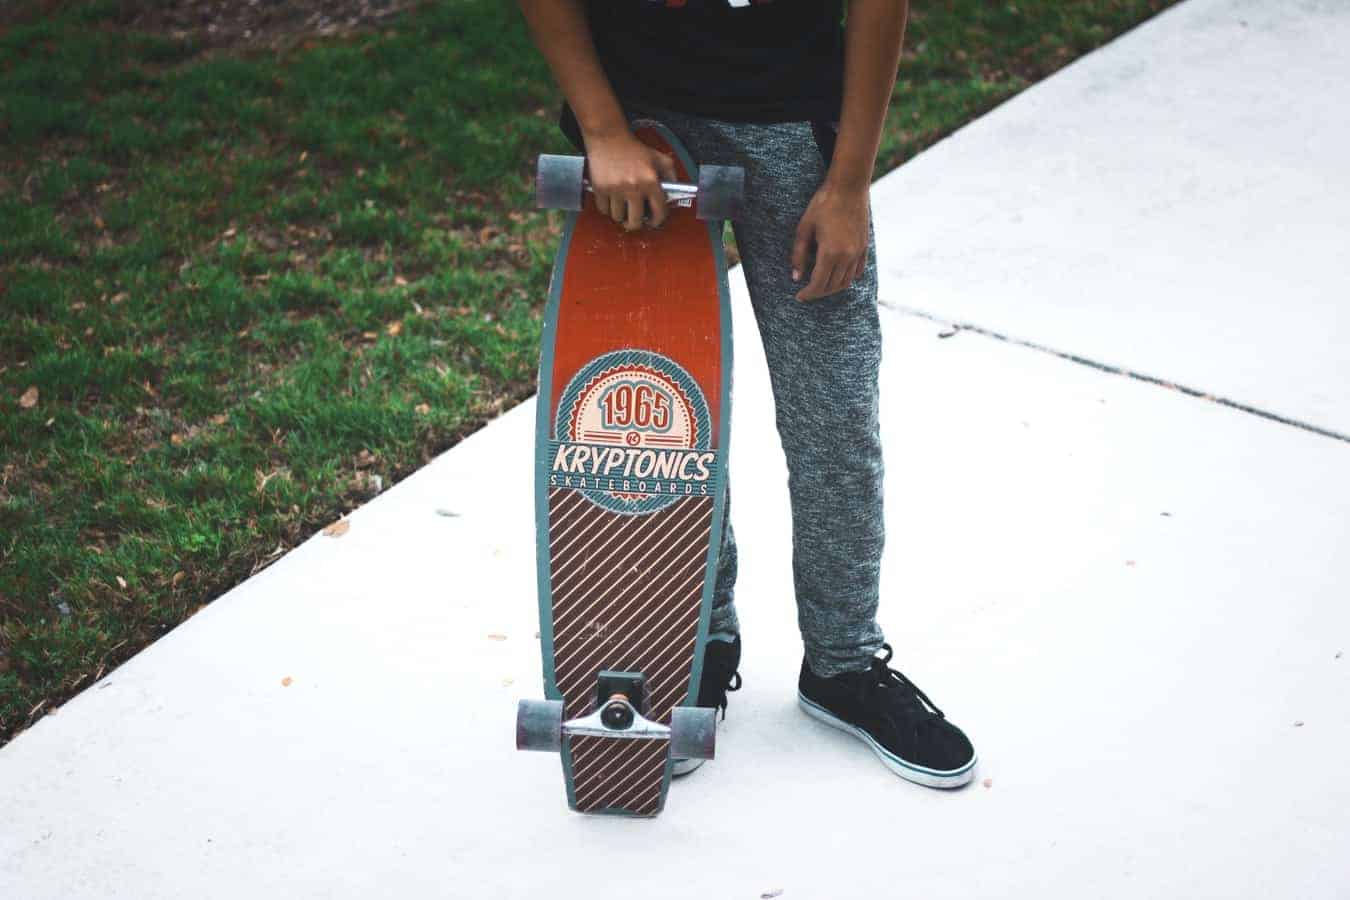 Best Old School Skateboard Decks